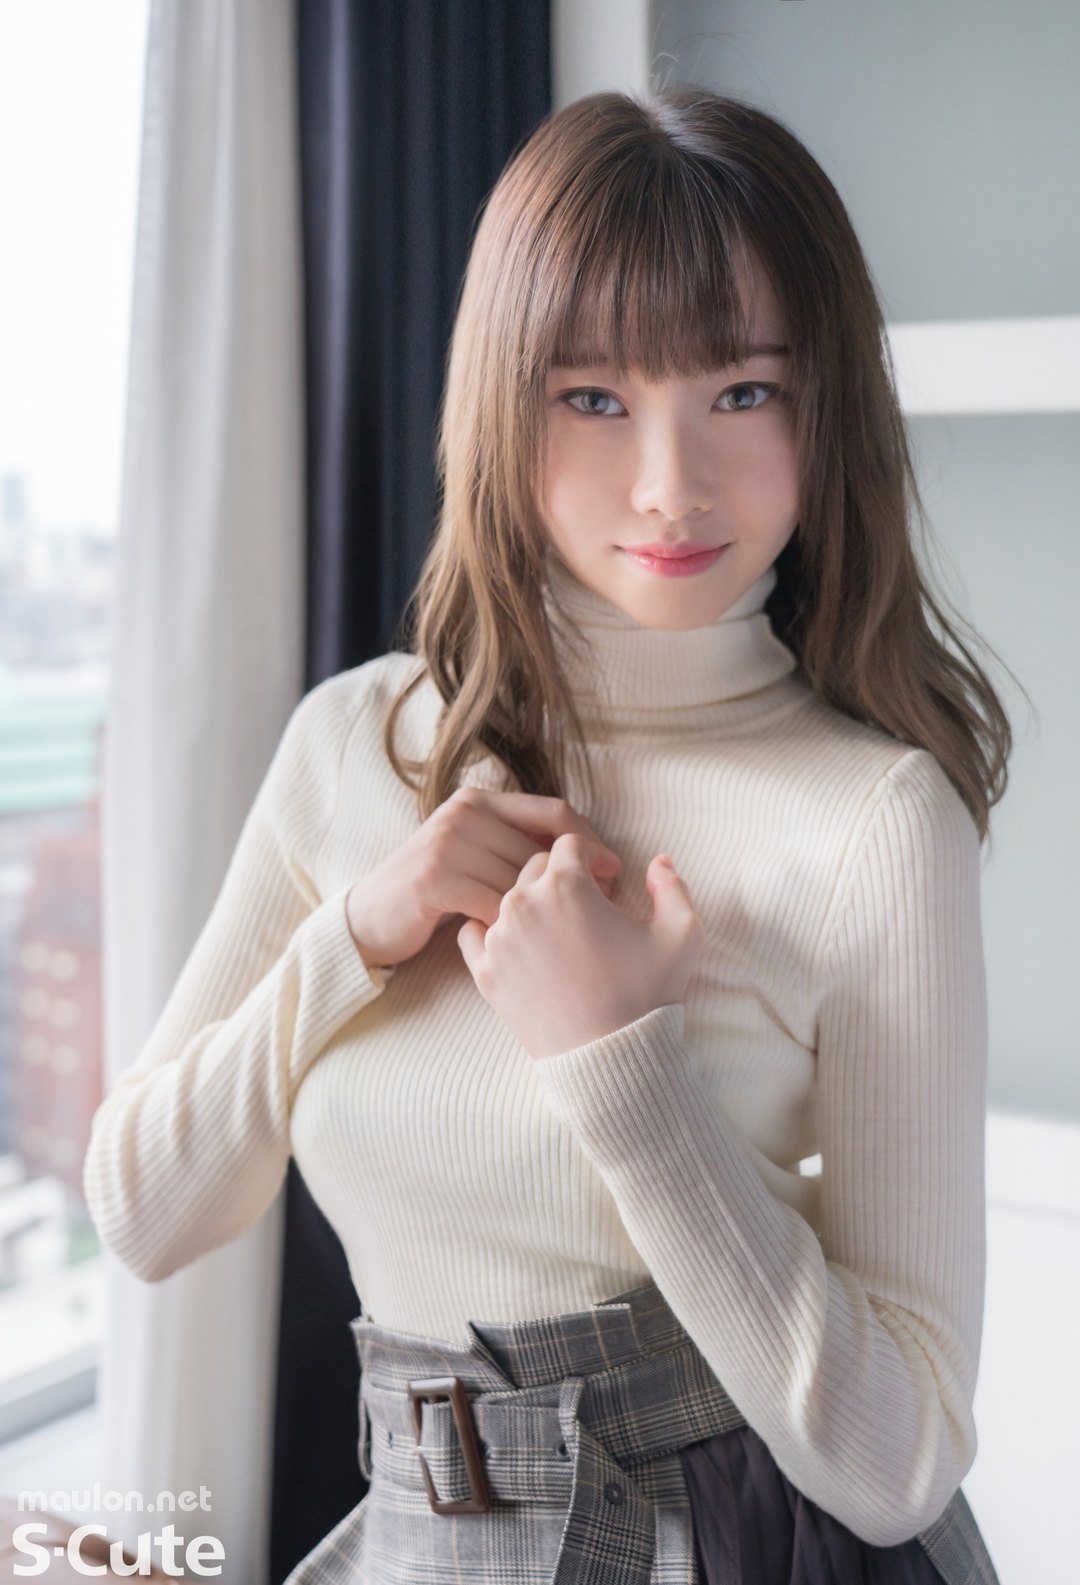 MauLon.Net - Ảnh sex jav idol Nhật Bản - Arisa Takanashi